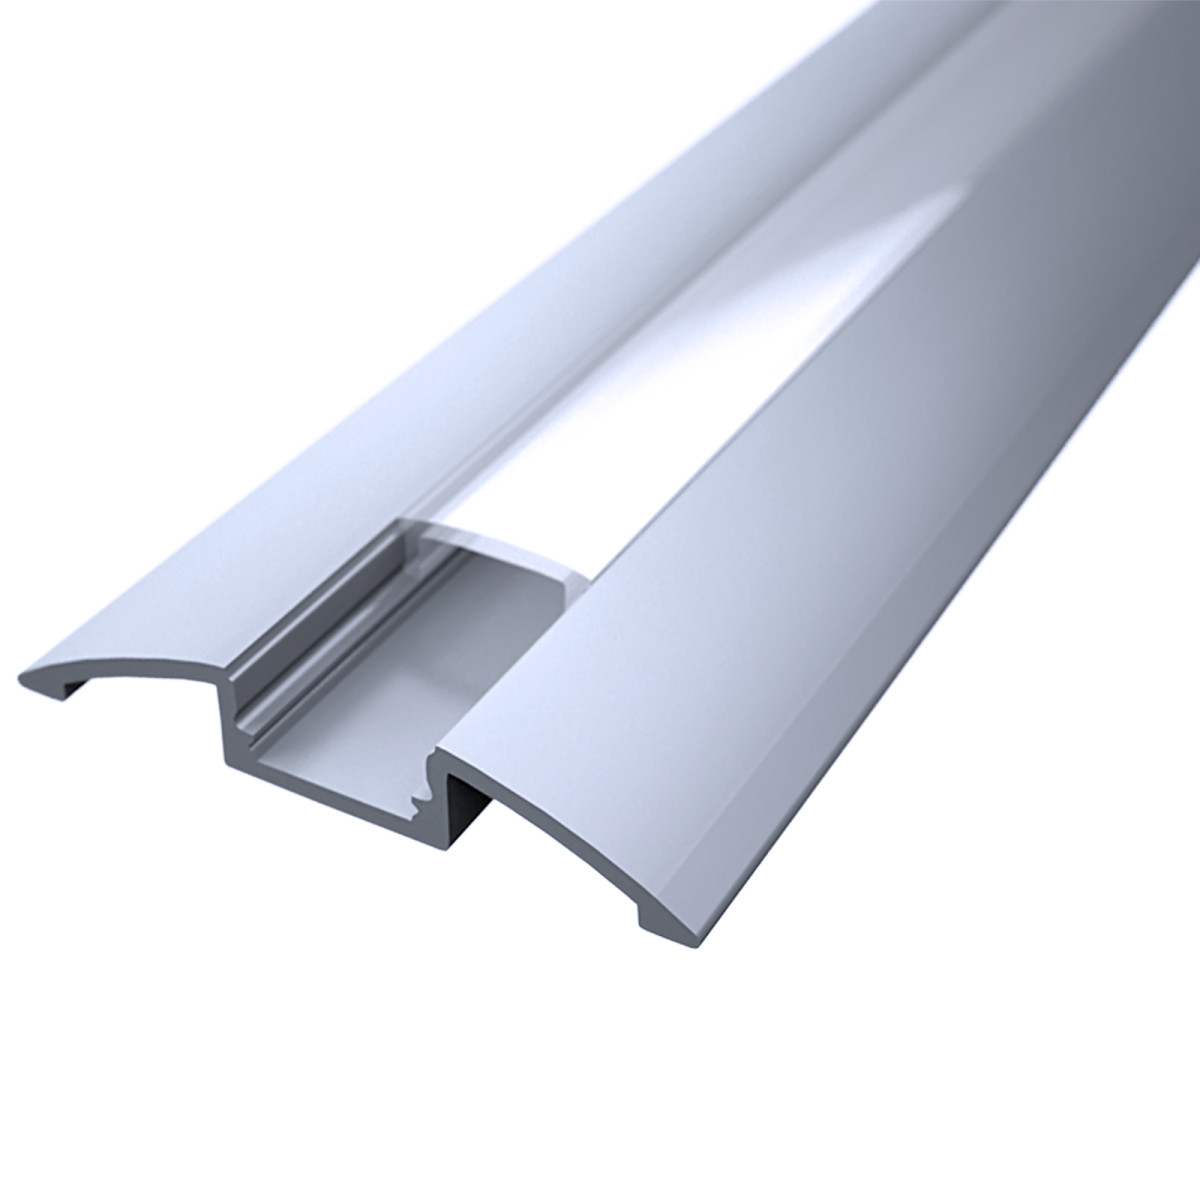 LED Flachprofil "Design-Line" | Abdeckung transparent | Zuschnitt auf 8cm |